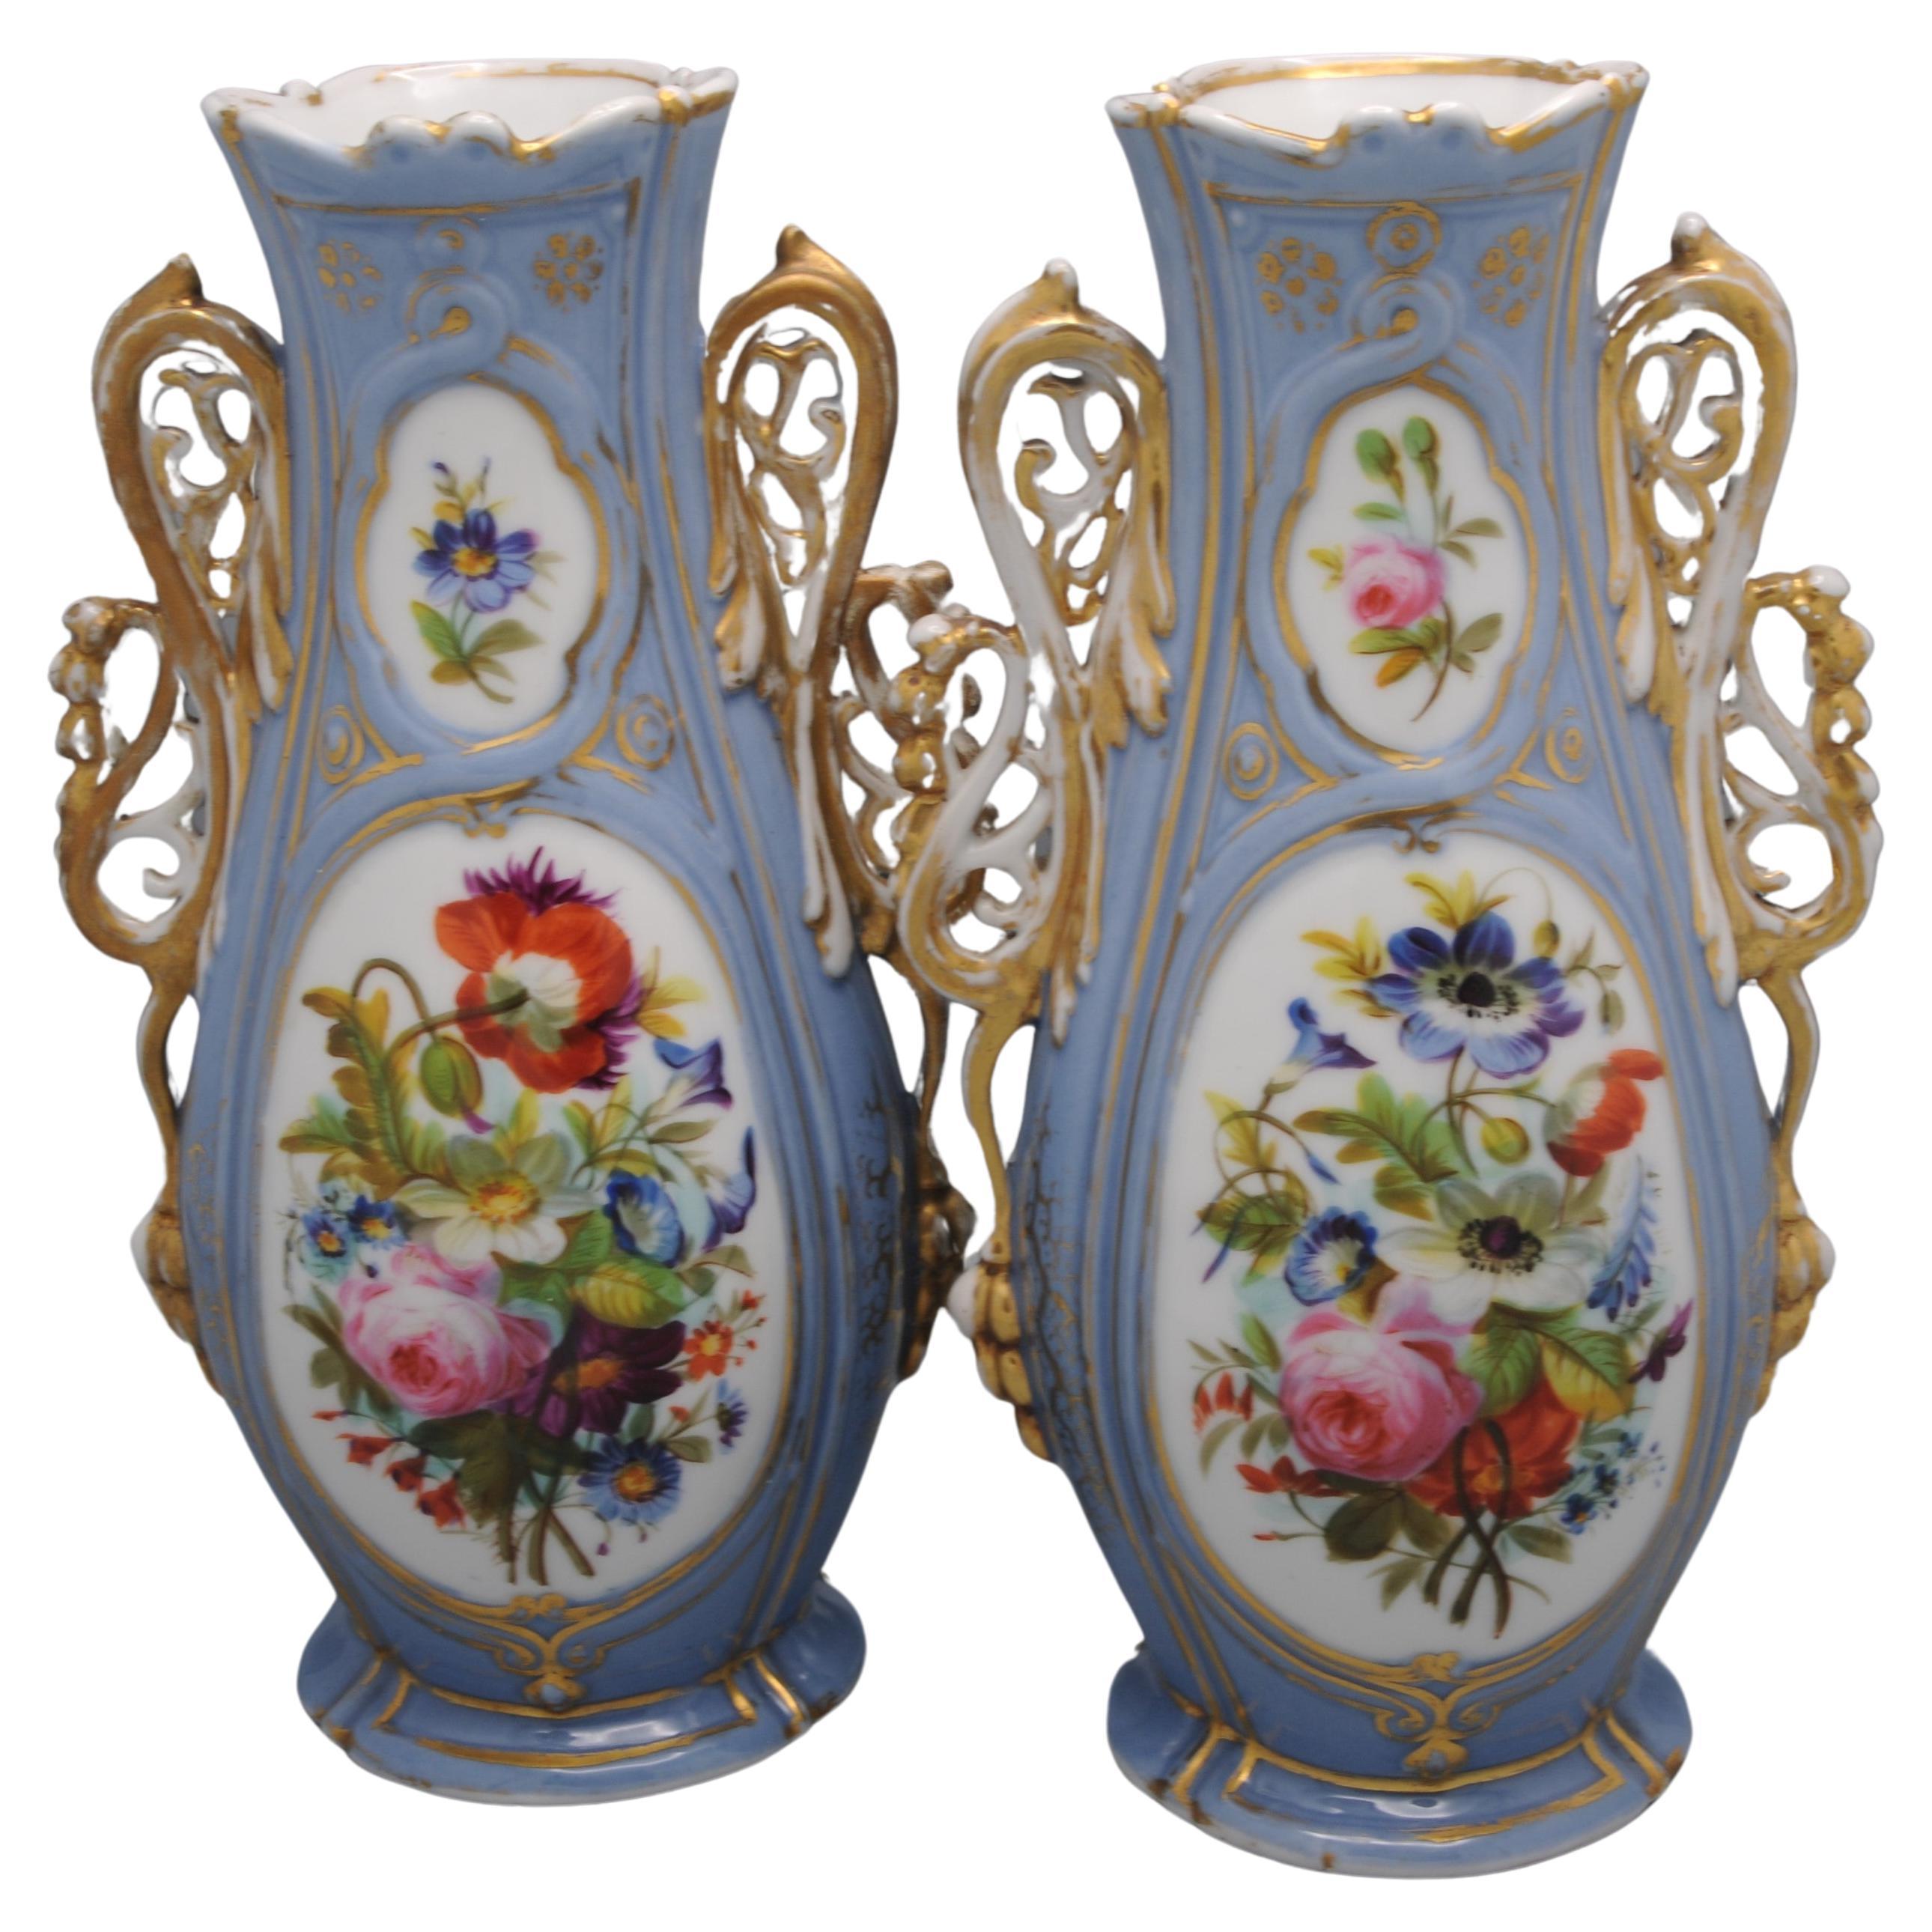 Paire de vases romantiques du Vieux Paris ou du Vieux Bruxelles, deuxième moitié du 19e siècle, très ornés
De forme balustre, les vases en porcelaine lourde sont décorés de fleurs et de gerbes florales sur une fonte lilas. Poignées à enroulement